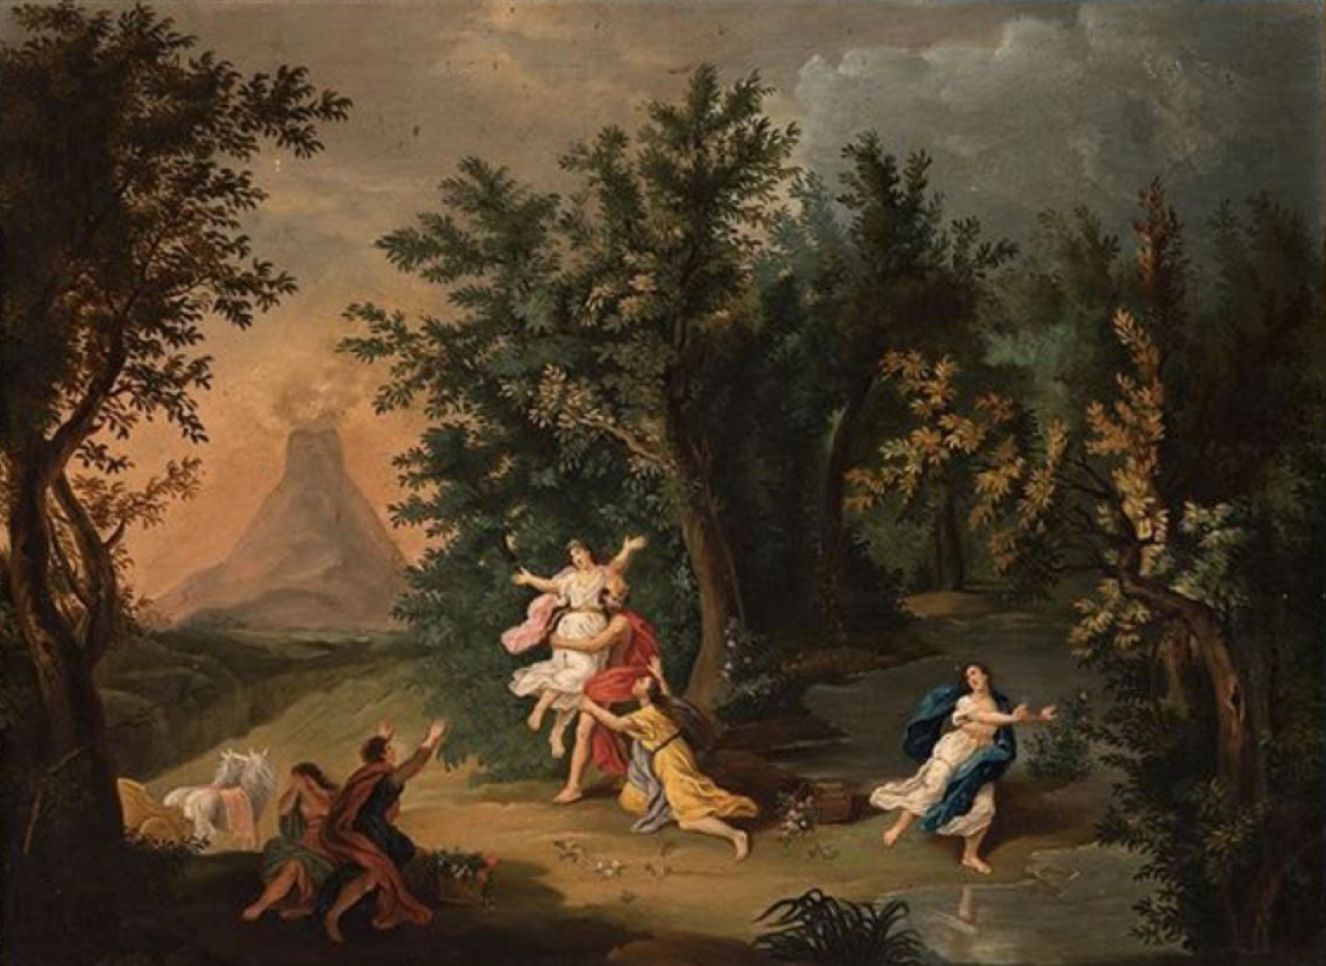 Null 18世纪的意大利画派。
绑架普罗瑟芬》。
布面油画(有框架)
51 x 69厘米。有框架。